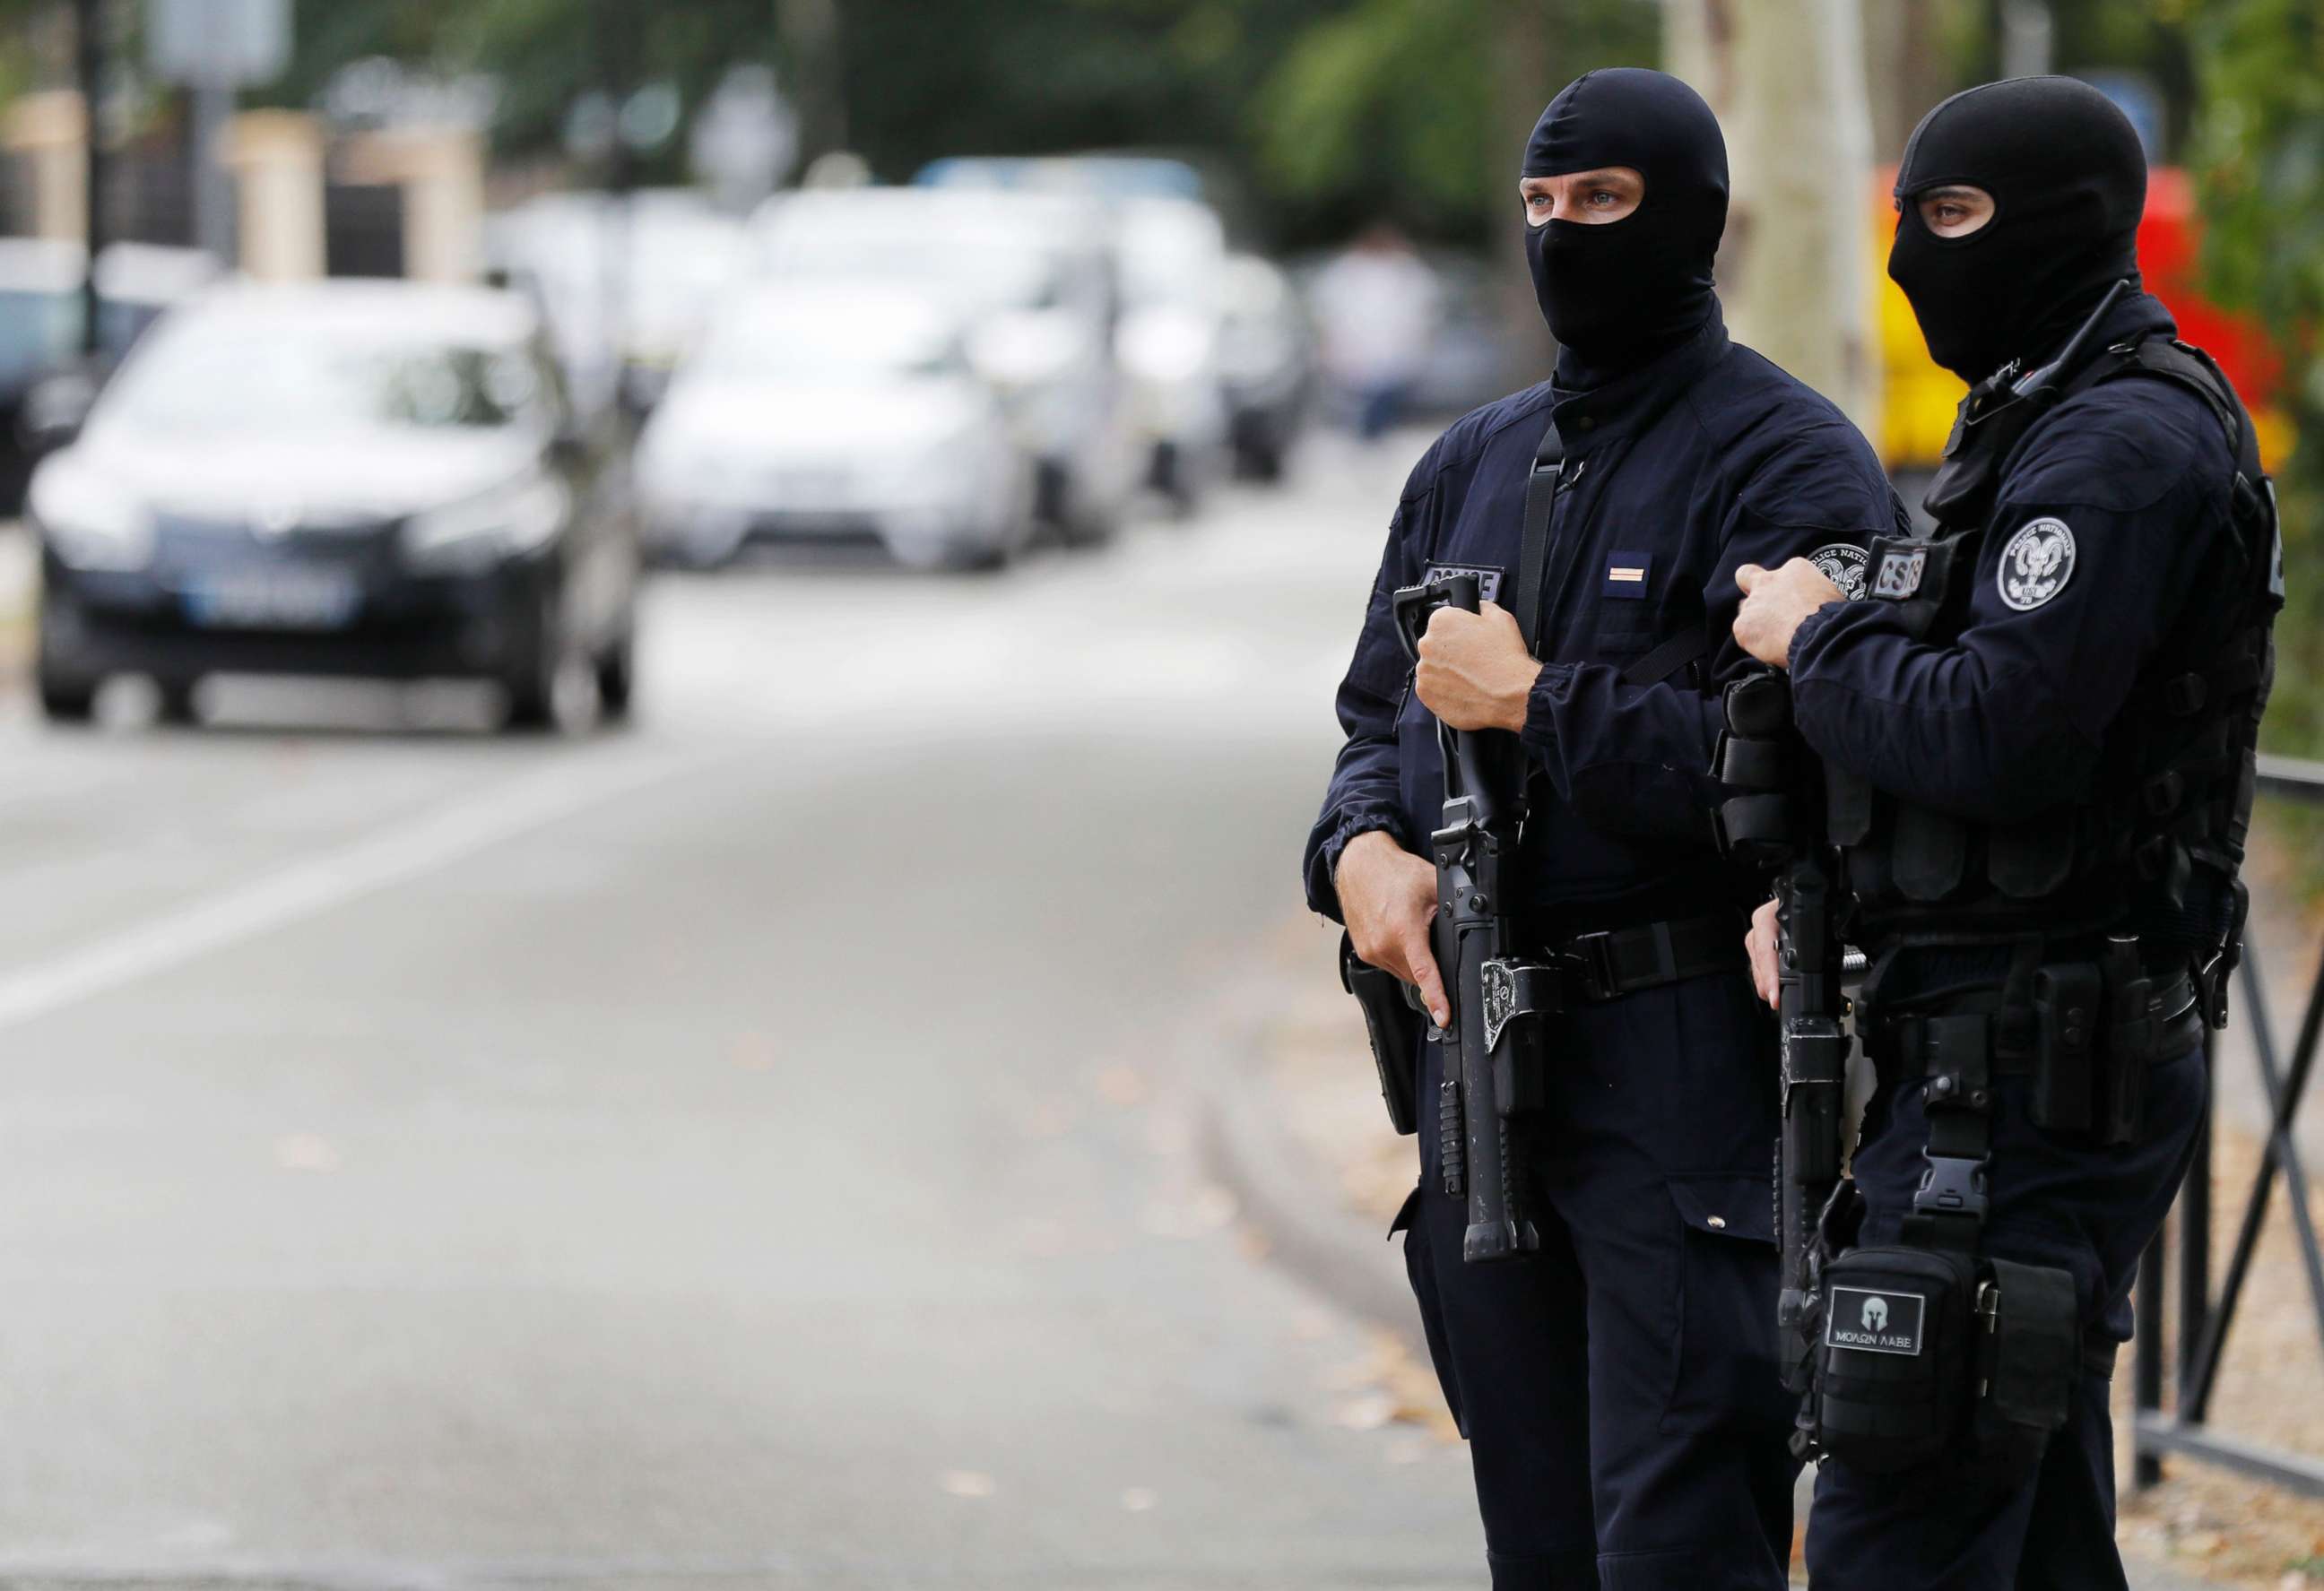 Knife-wielding man kills 2 in Paris suburb - ABC News